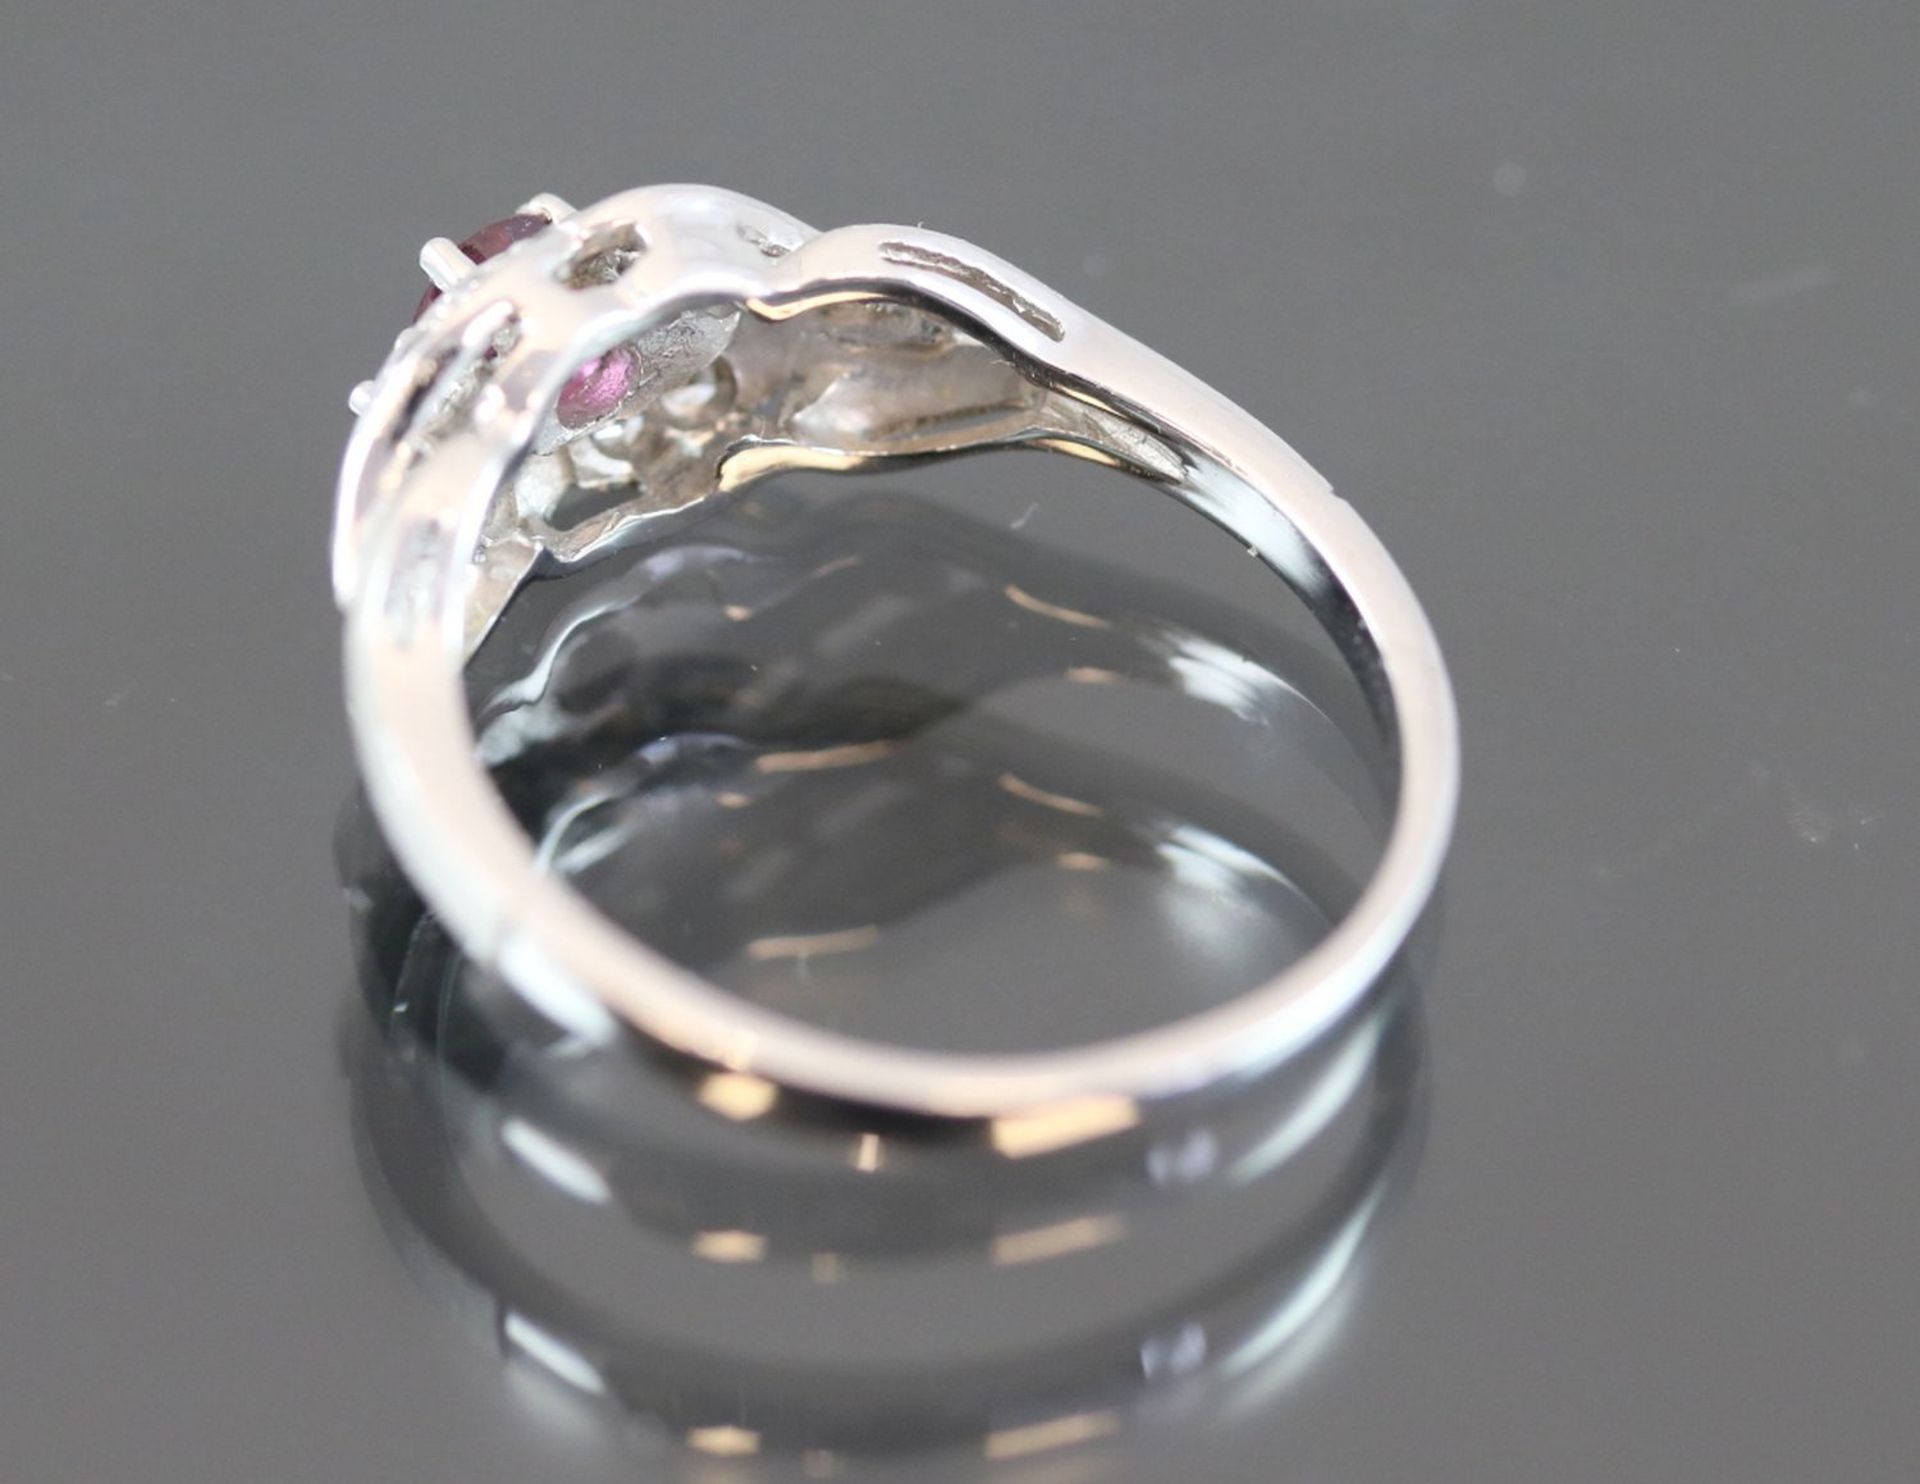 Rubin-Diamant-Ring, 585 Weißgold2,5 Gramm Diamanten, 0,09 ct., w/si. Ringgröße: 55Zustand: Neu- - Bild 3 aus 3